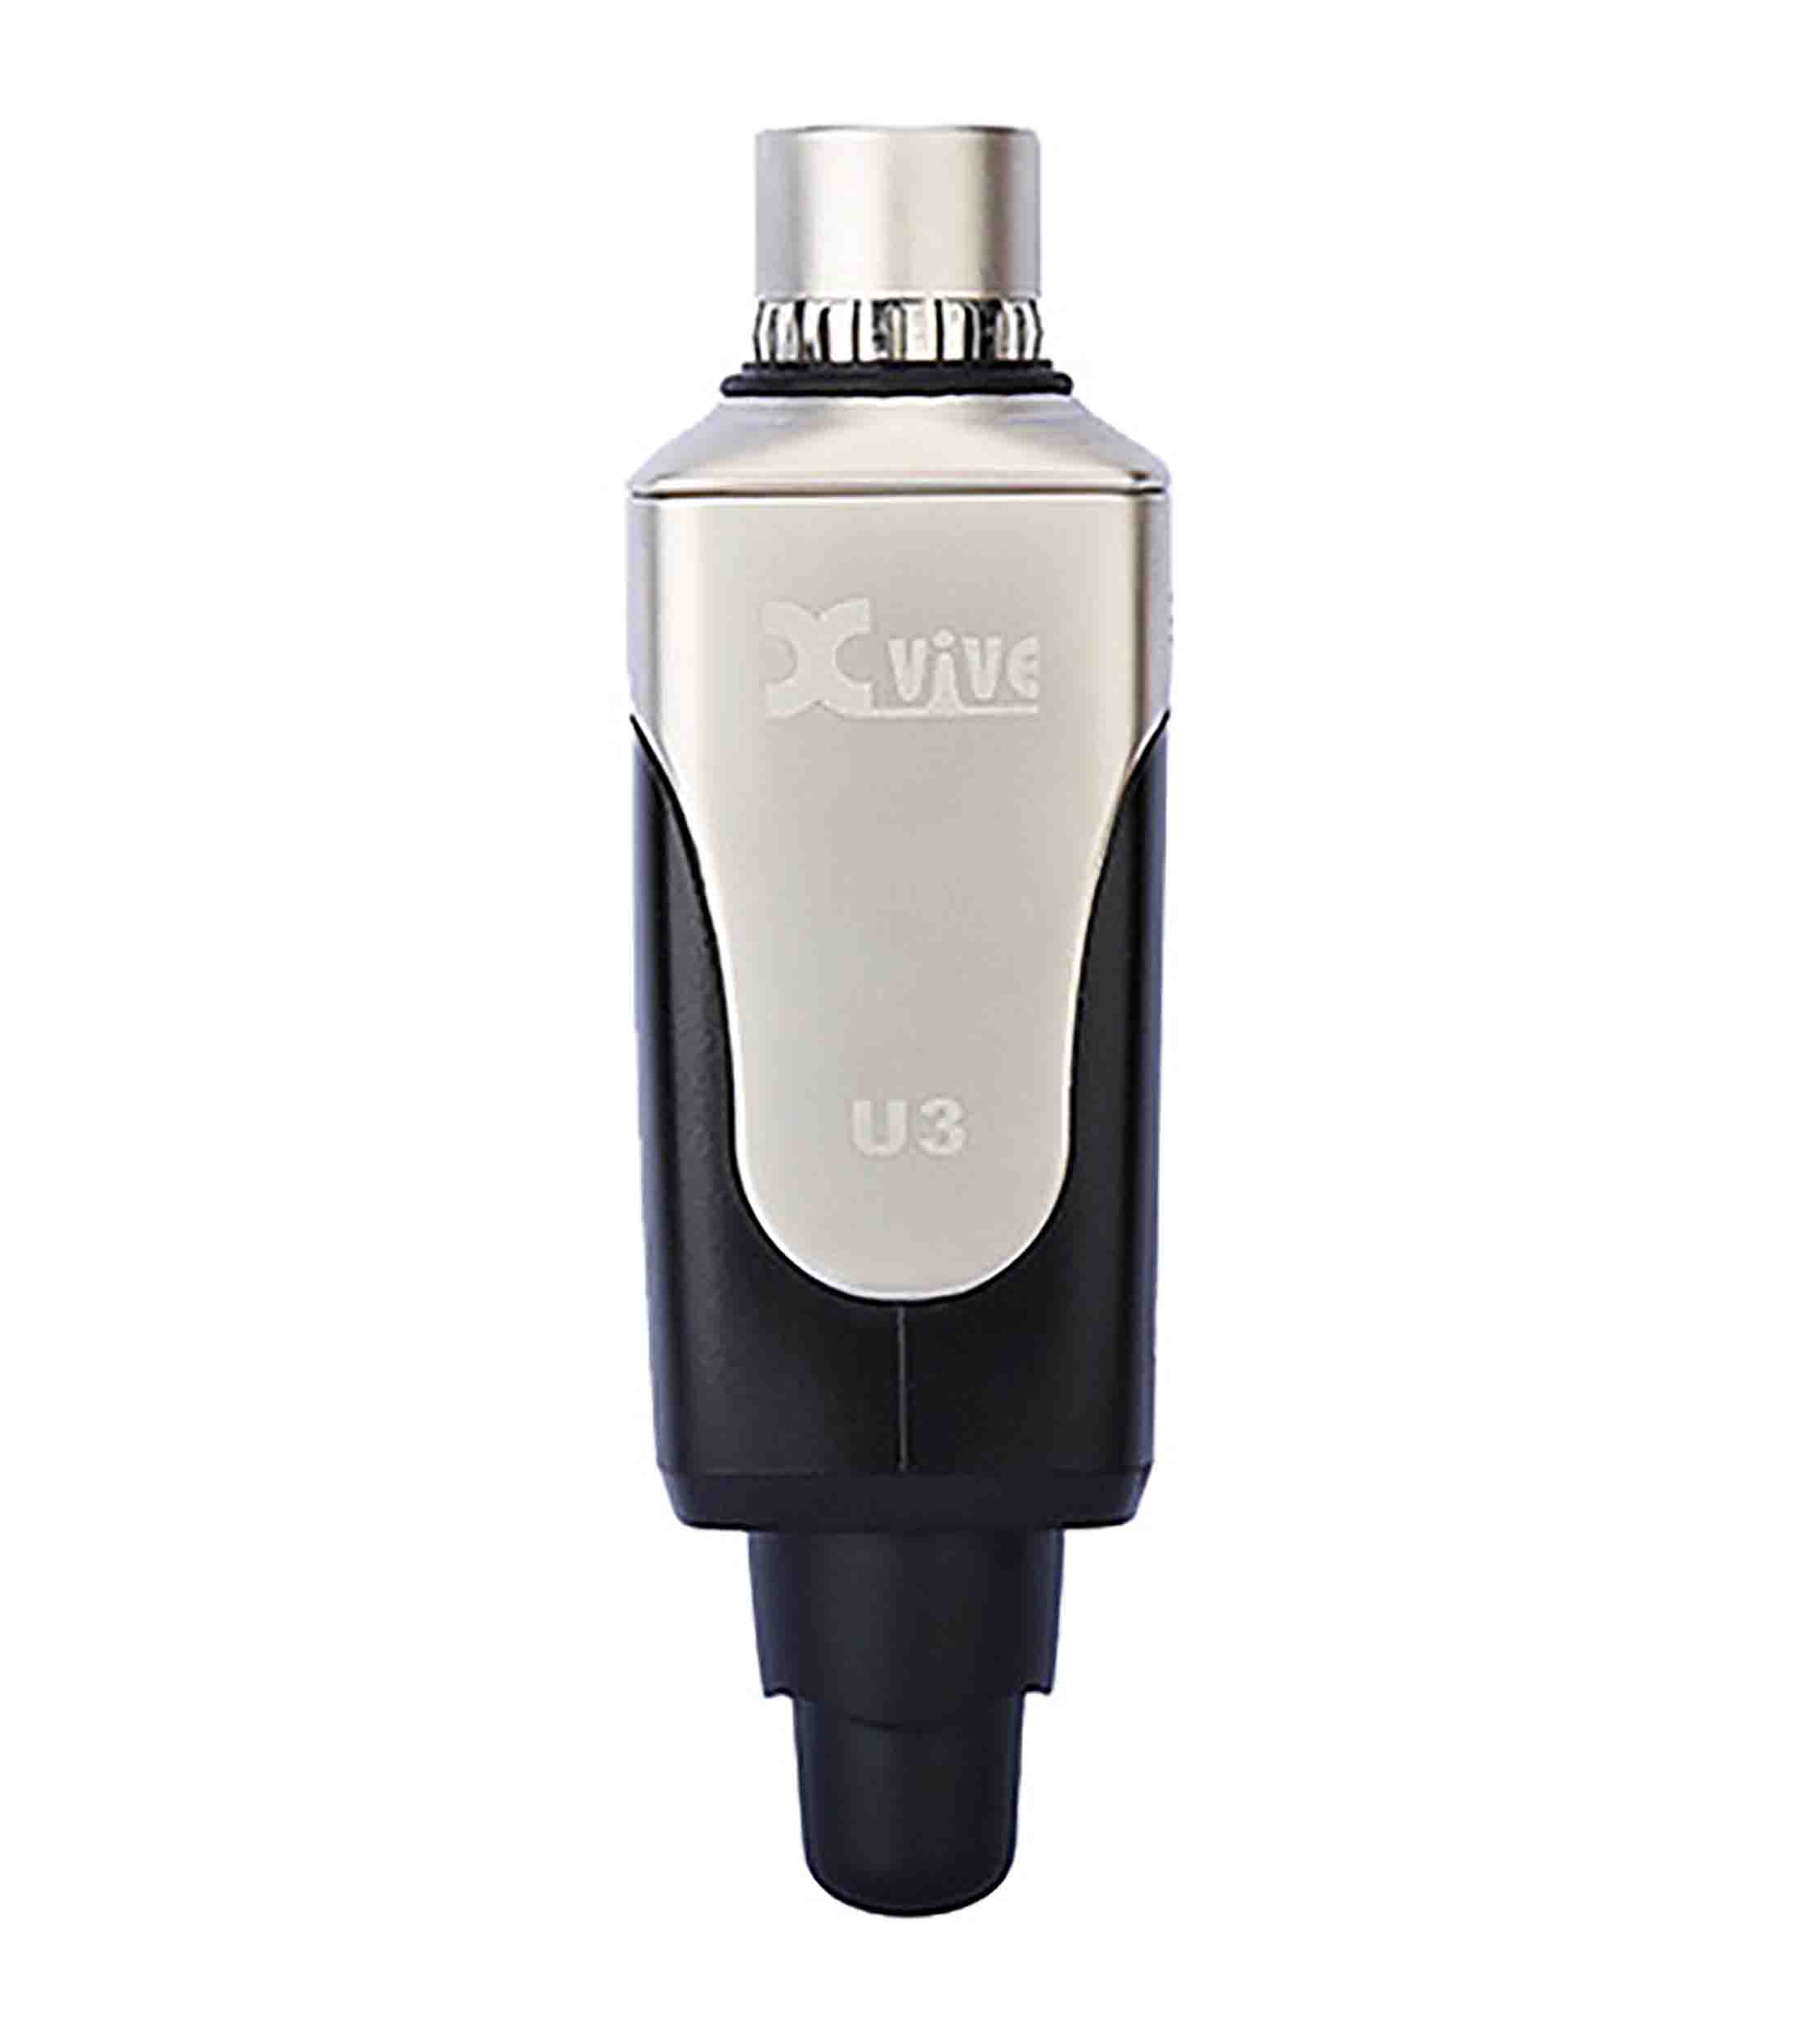 Xvive Audio U3, 2.4 GHz Dynamic Microphone Wireless System by Xvive